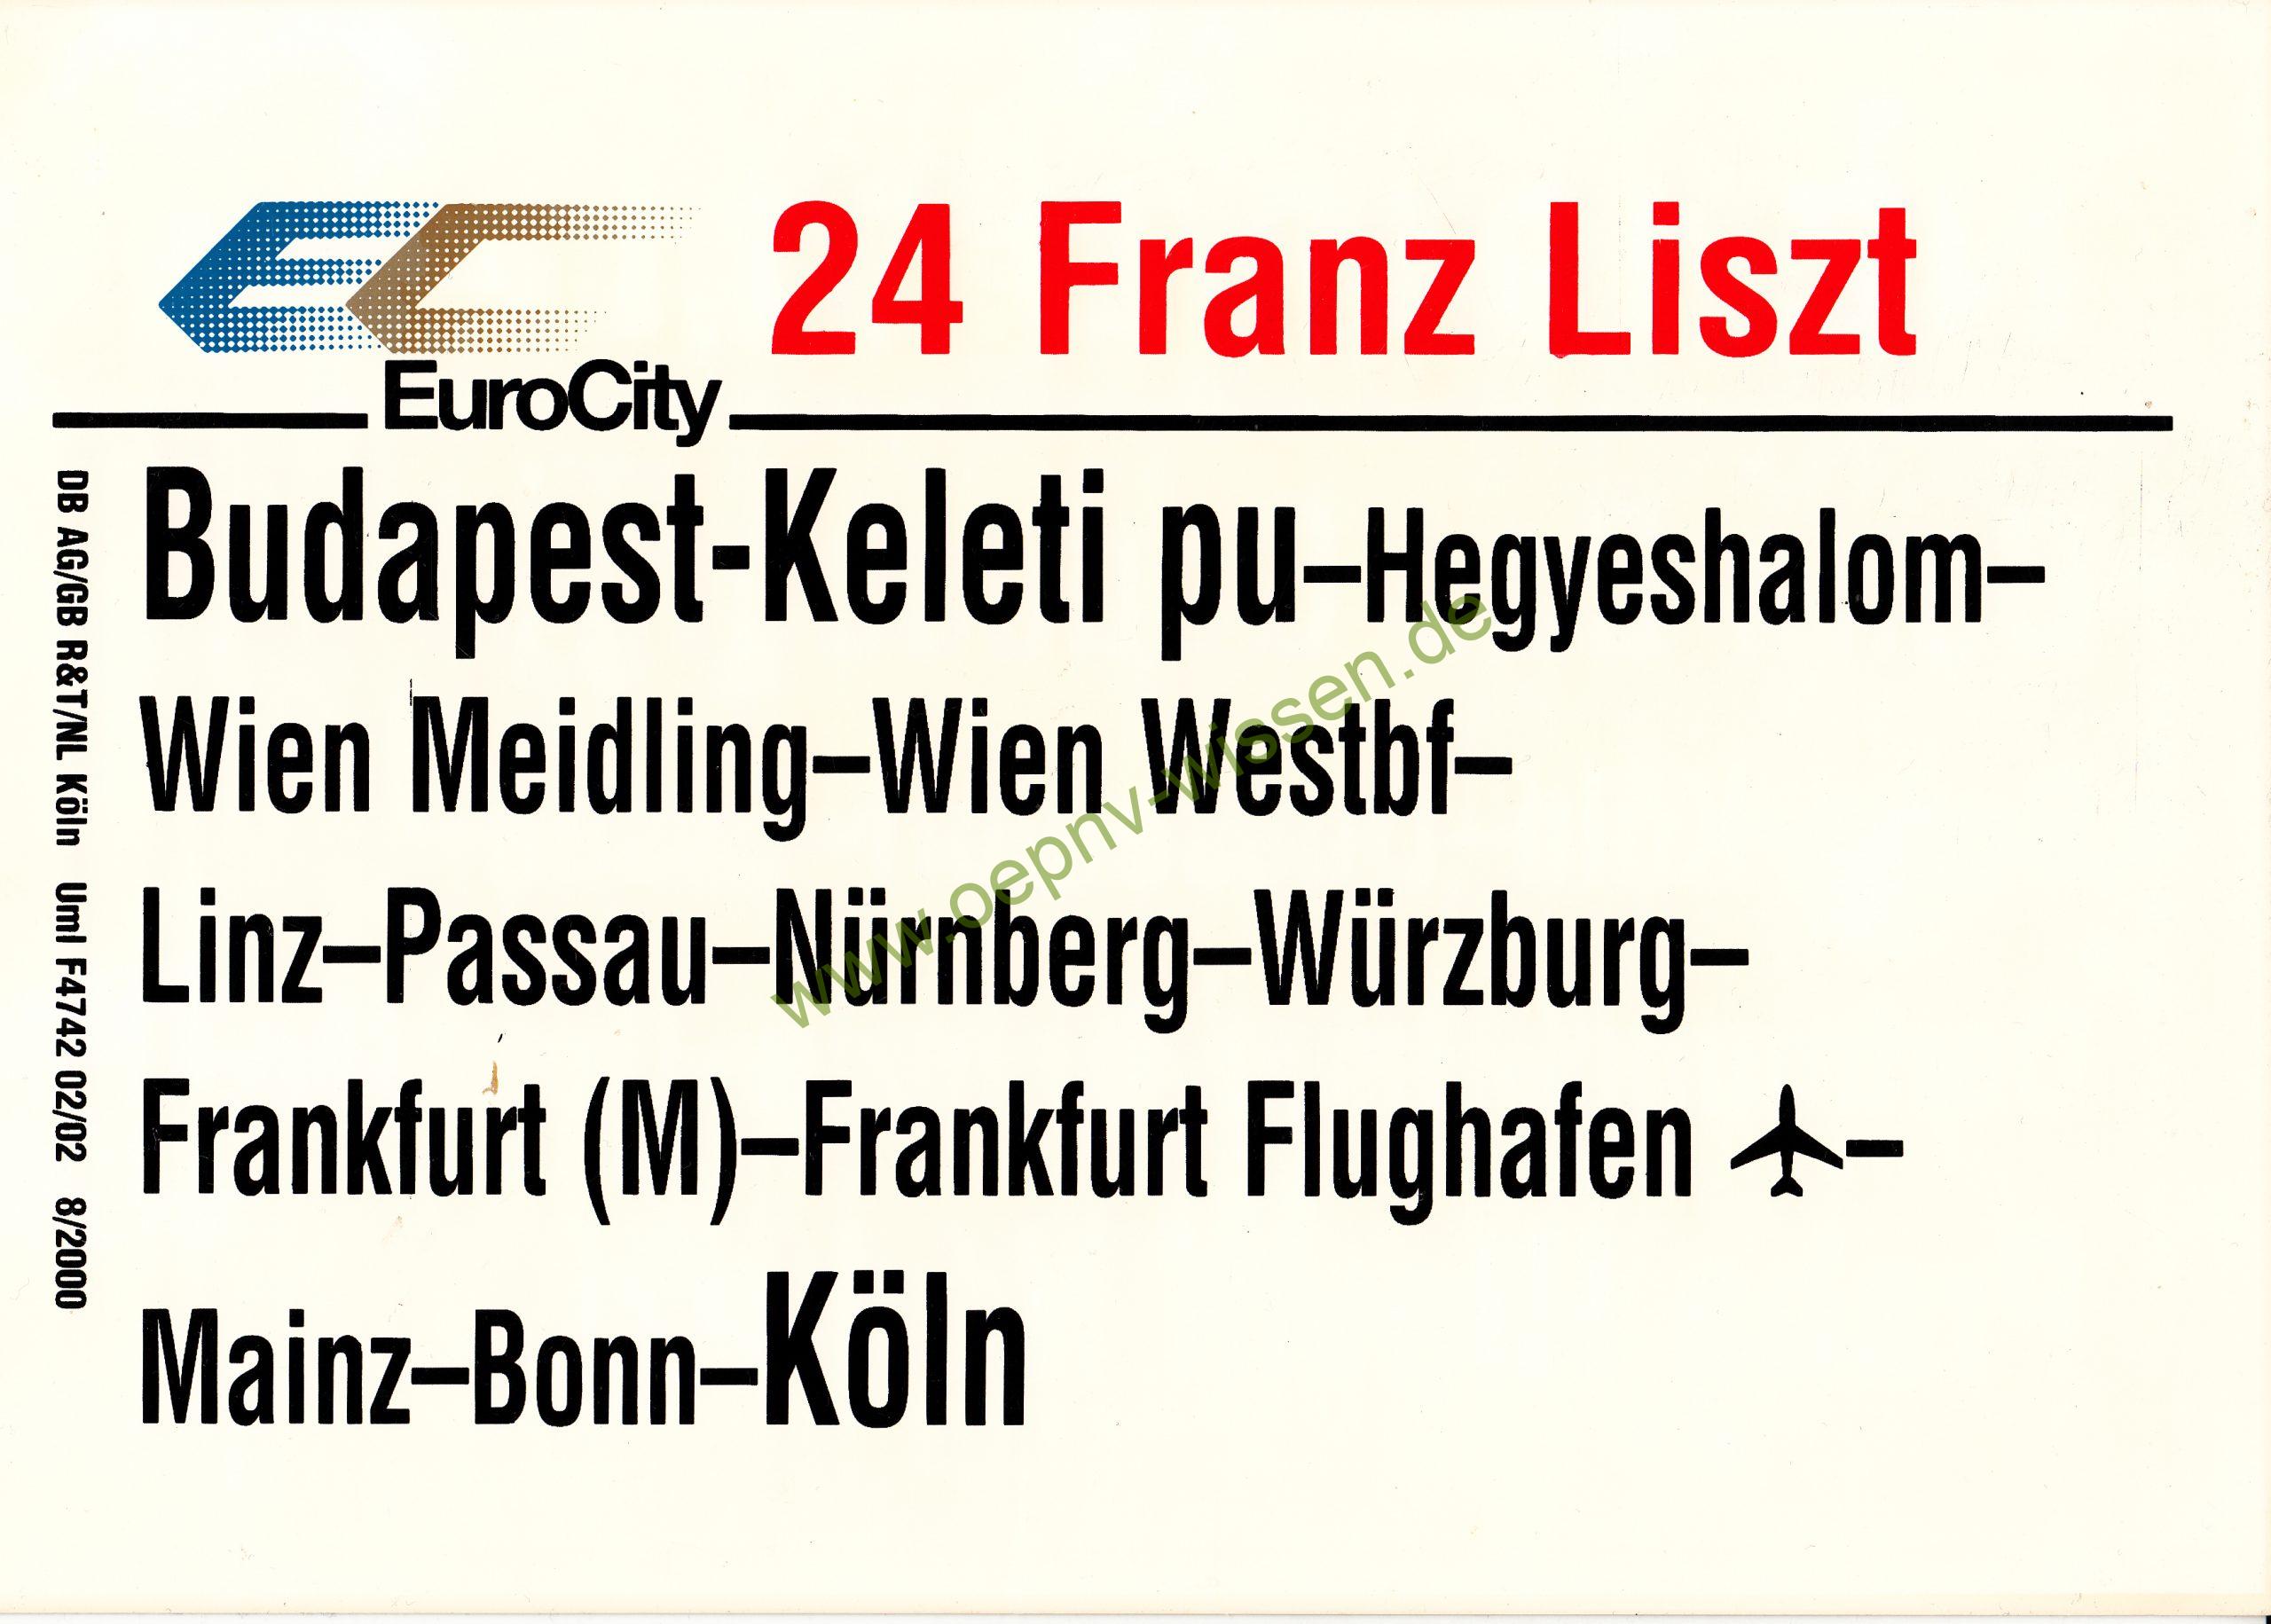 EC 24 Franz List